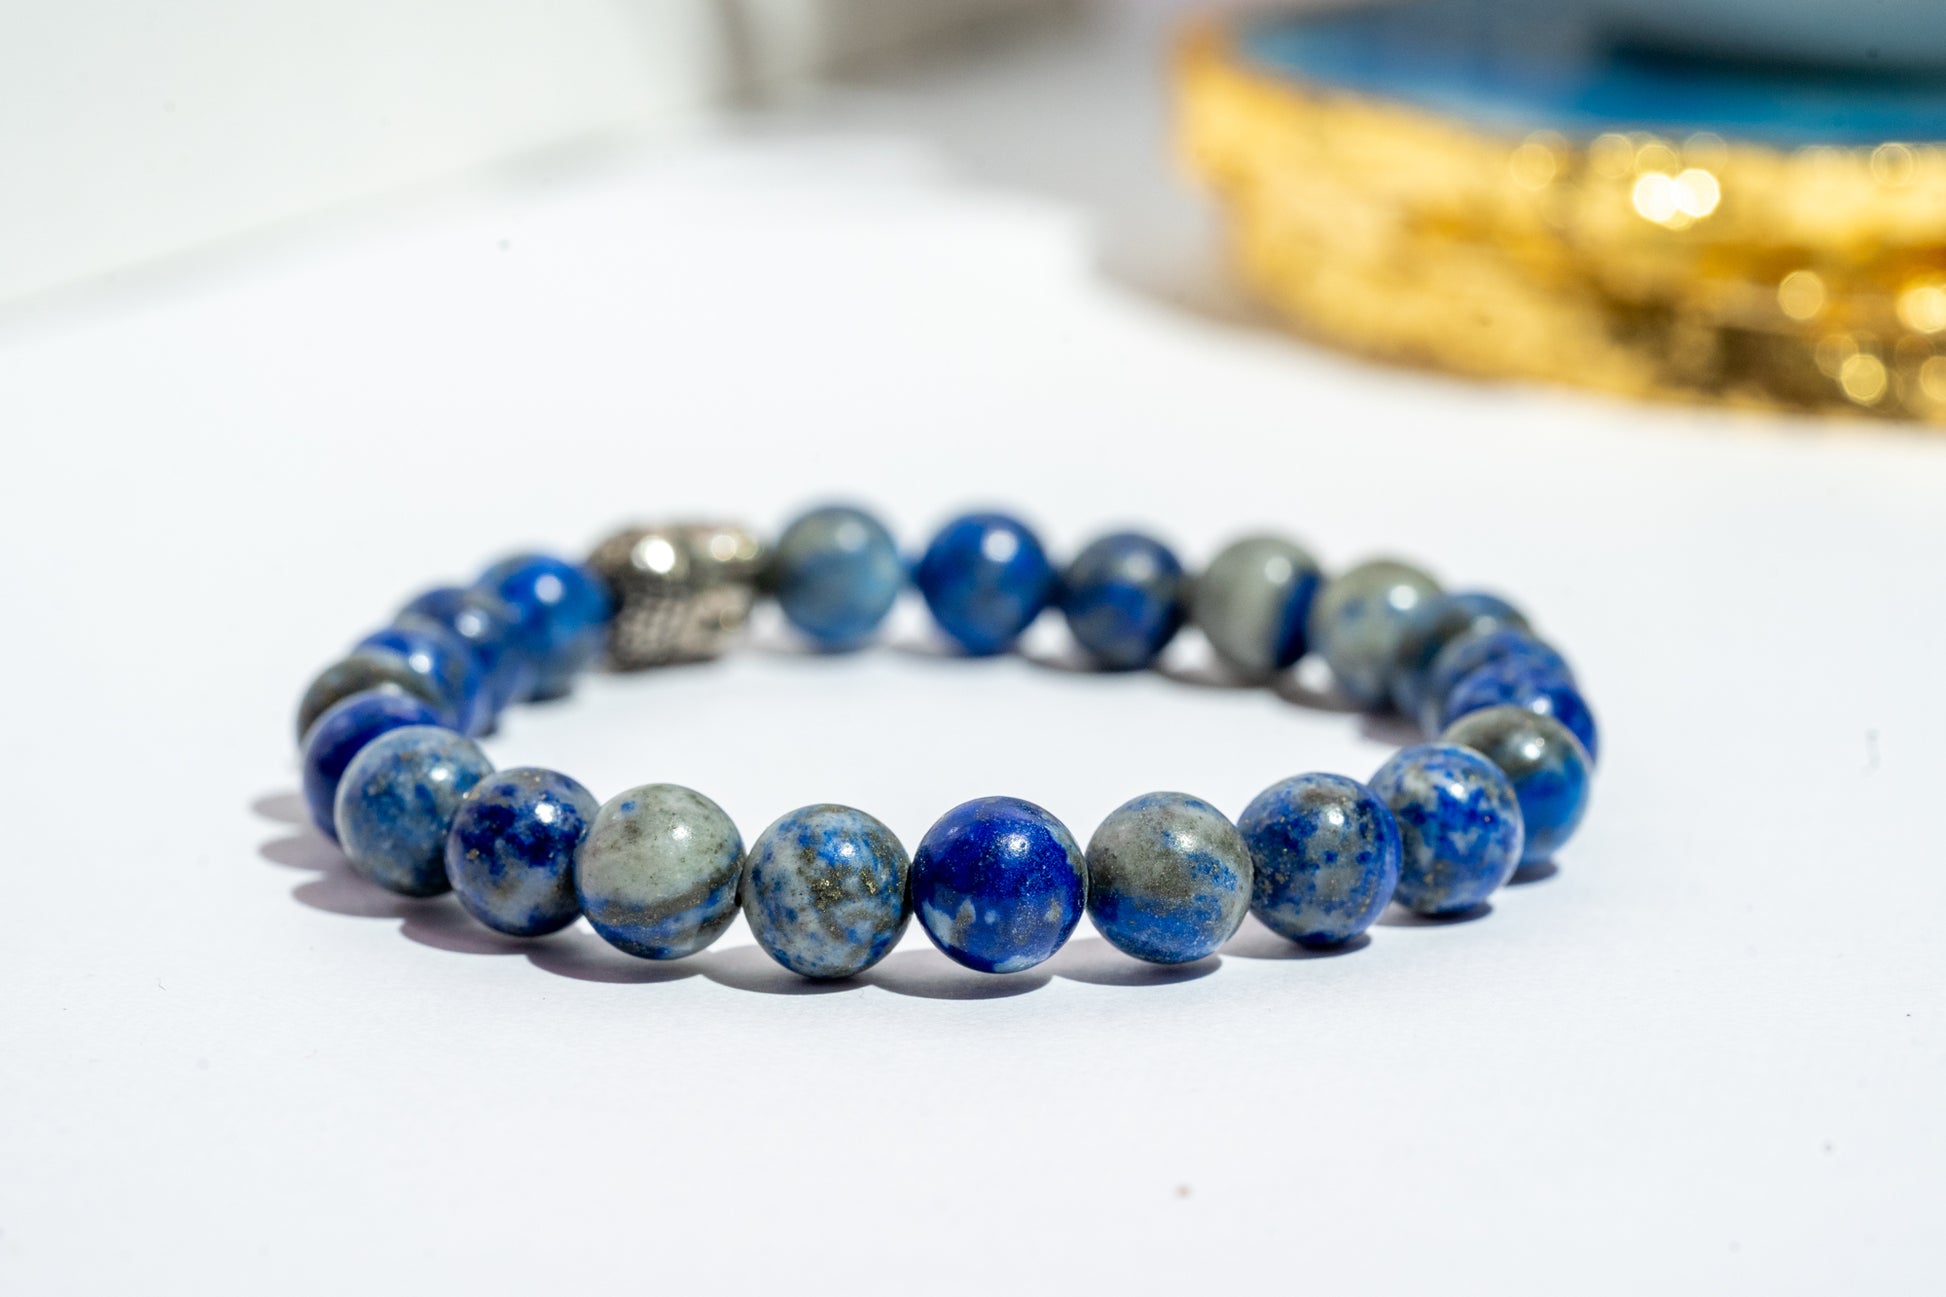 Zen Lapis Lazuli Bracelet - The Zen Crystals